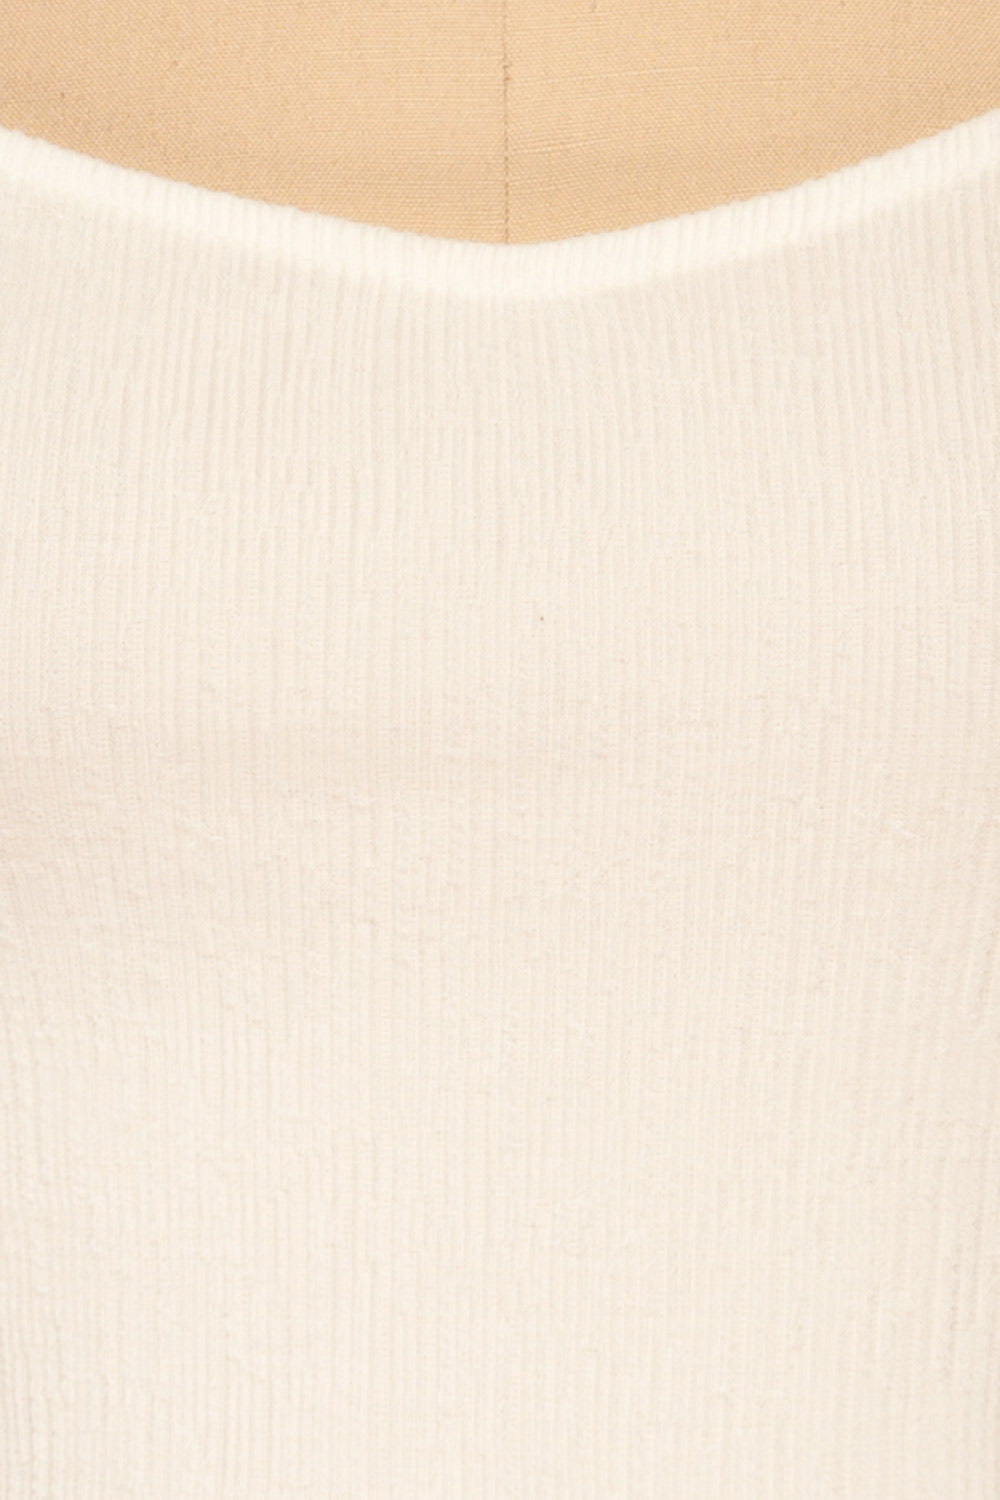 Eidssund White Puff Sleeved Crop Top | La Petite Garçonne fabric detail 